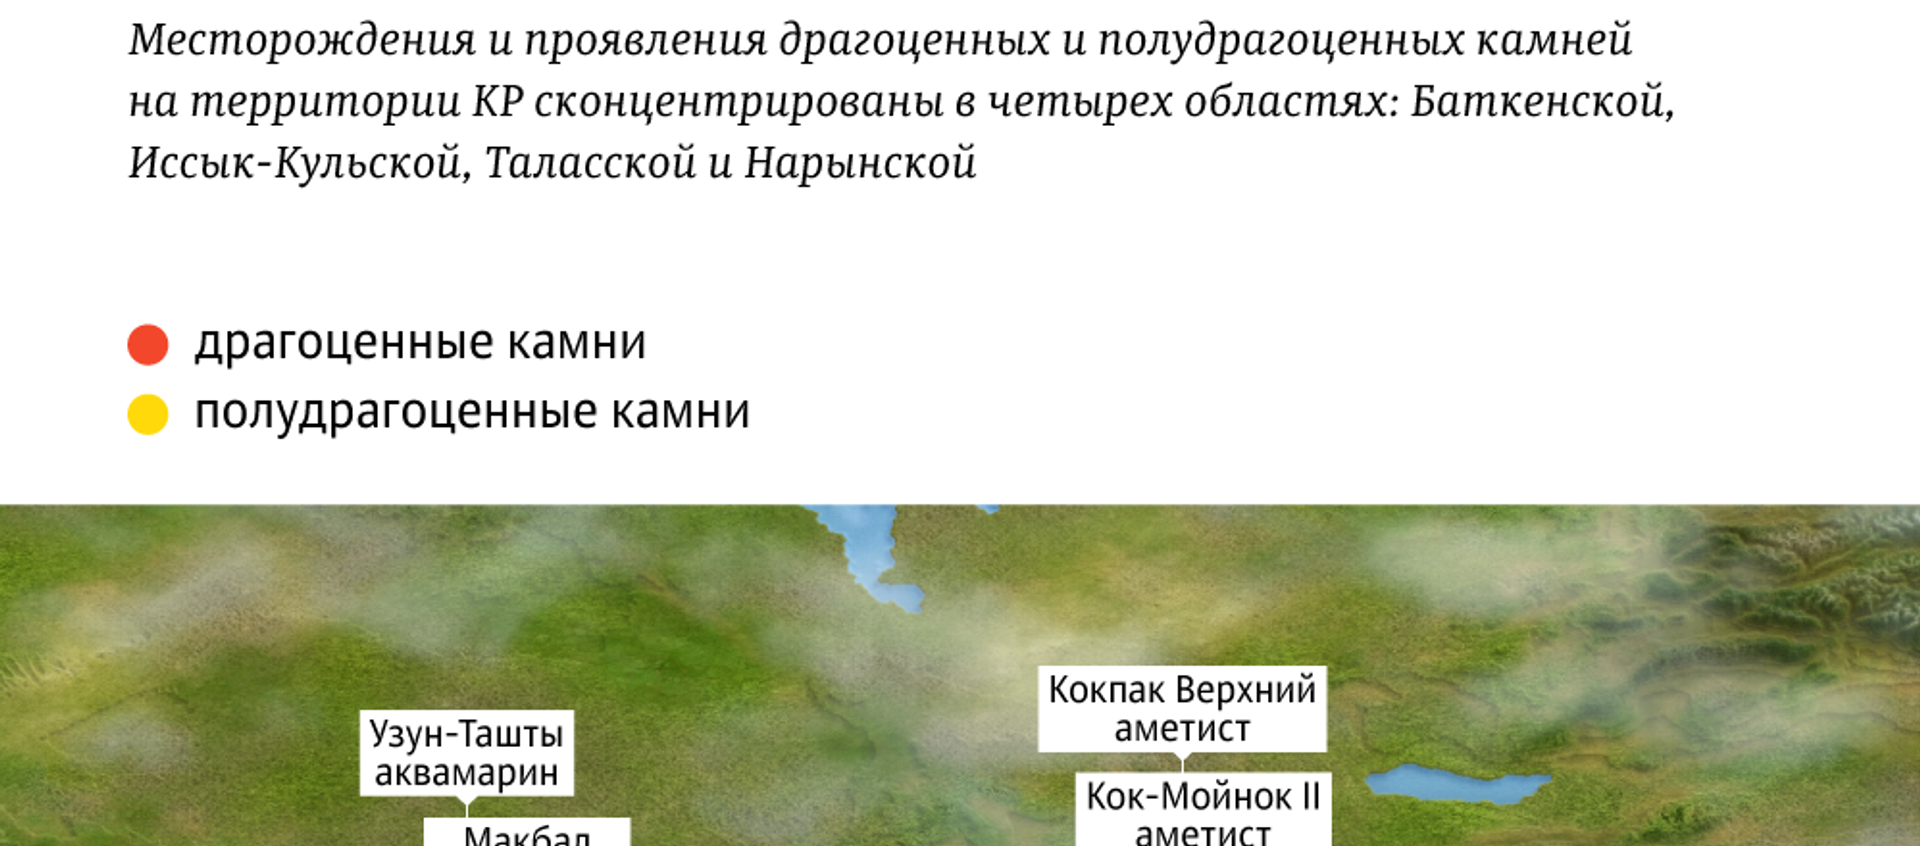 Драгоценные и полудрагоценные камни в Кыргызстане - Sputnik Кыргызстан, 1920, 15.07.2019